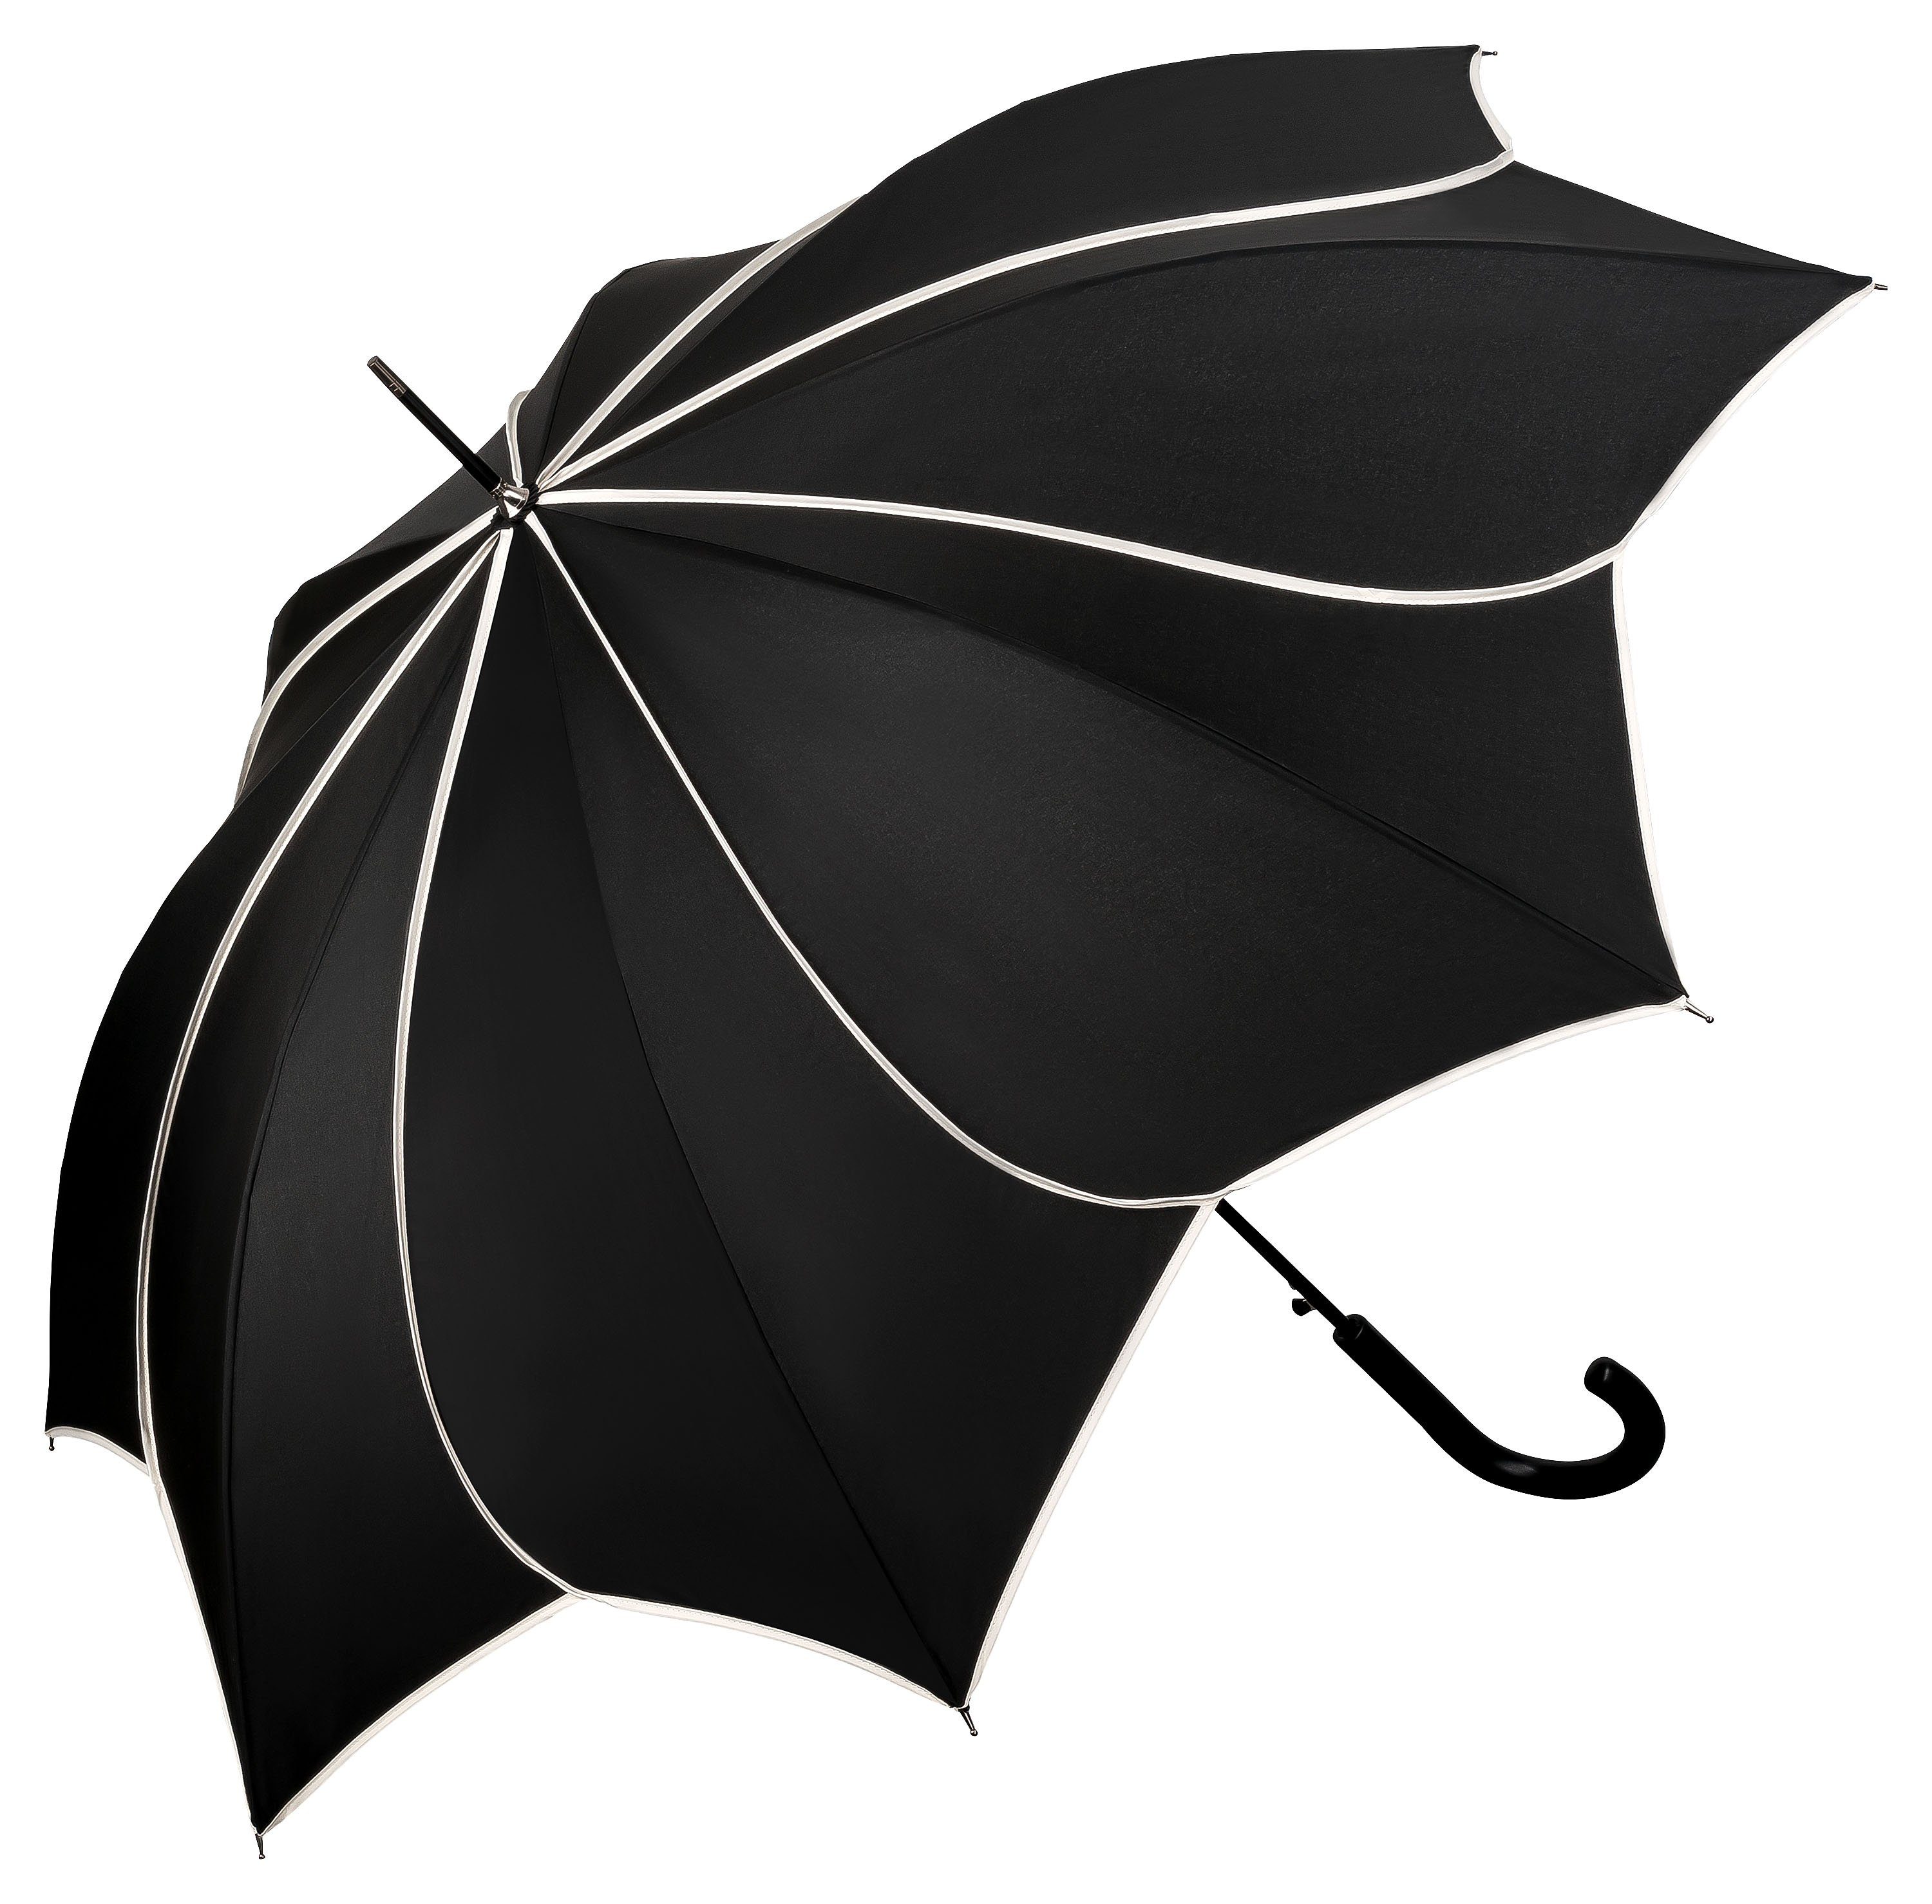 von Lilienfeld Stockregenschirm Regenschirm Sonnenschirm Hochzeitsschirm Minou, Blütenform schwarz mit Ziernaht in ecru